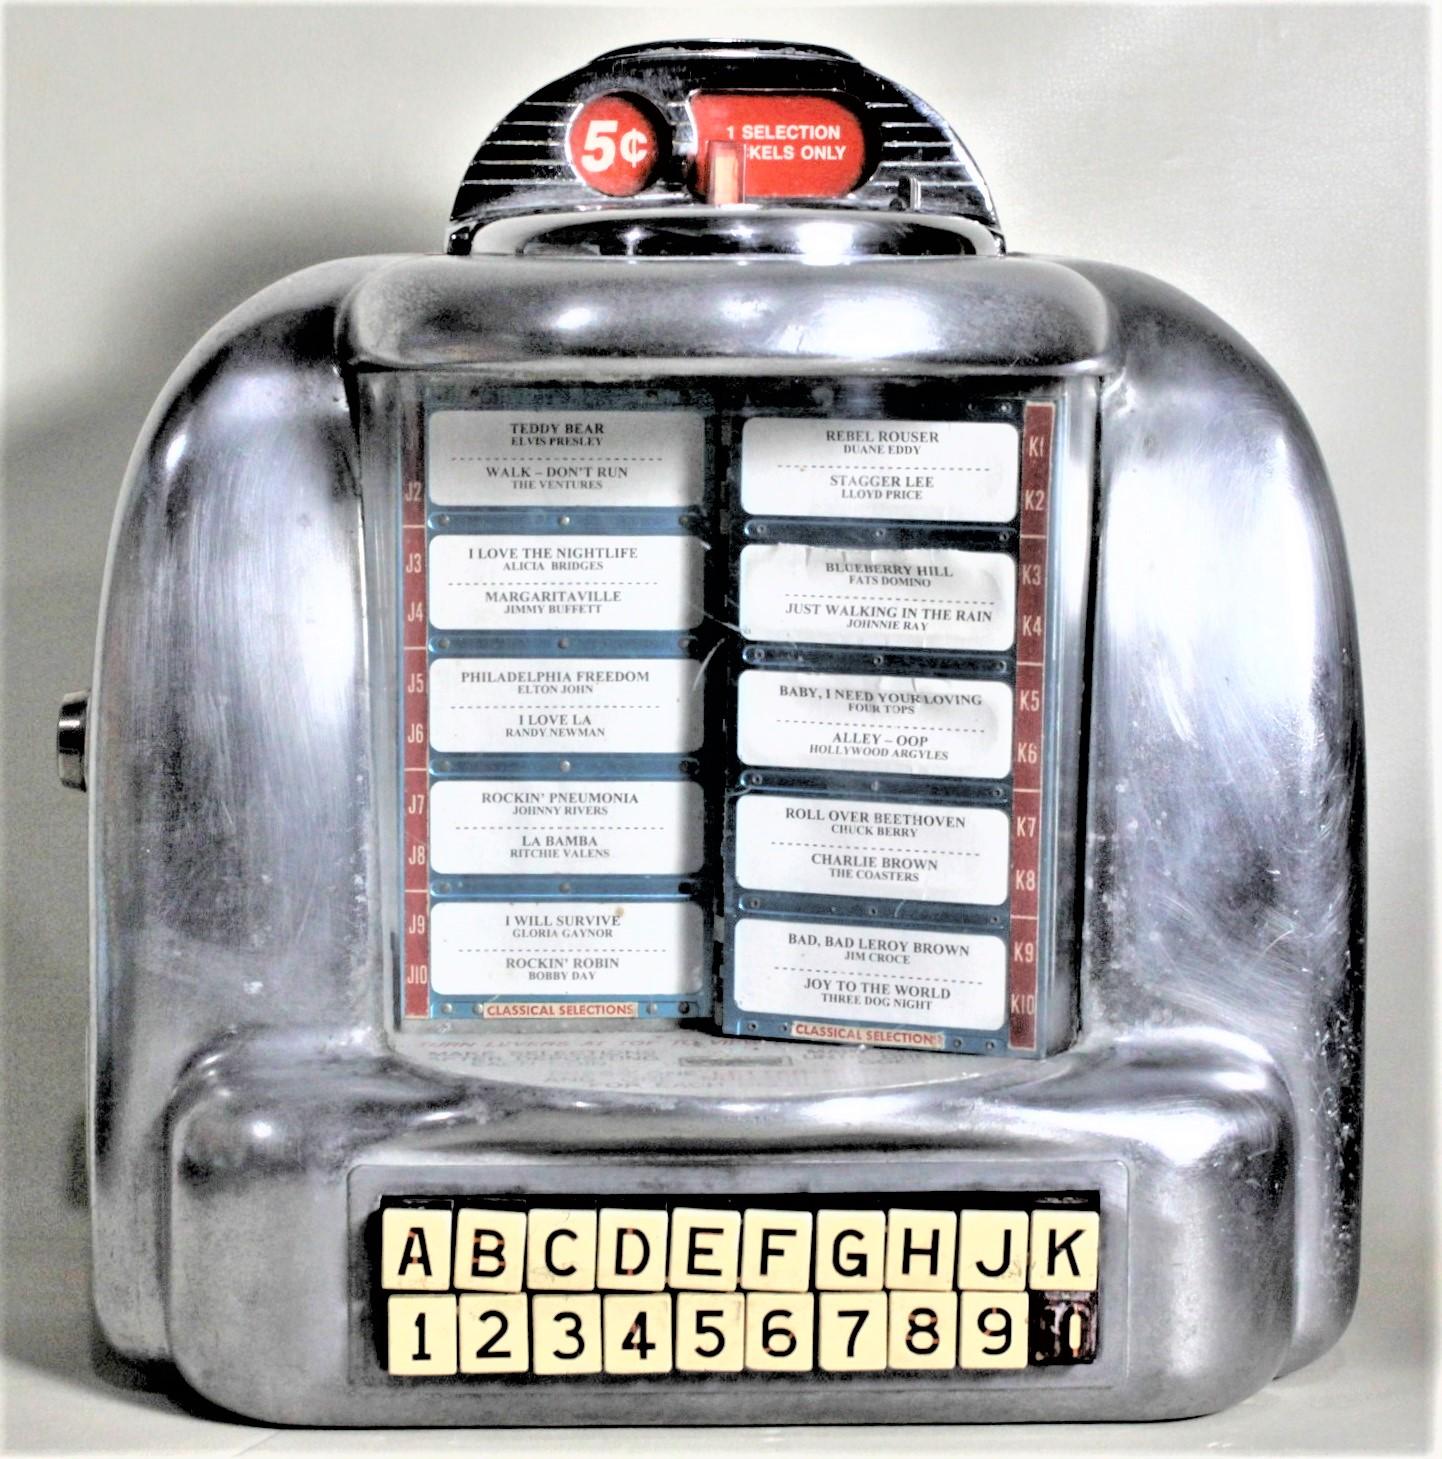 Dieser frühe, an der Wand montierte, münzbetriebene Jukebox-Musikwähler ist völlig unmarkiert, wird aber der Seeburg Corporation of the United States um 1955 im Stil des Maschinenzeitalters zugeschrieben. Seeburg hat eine 